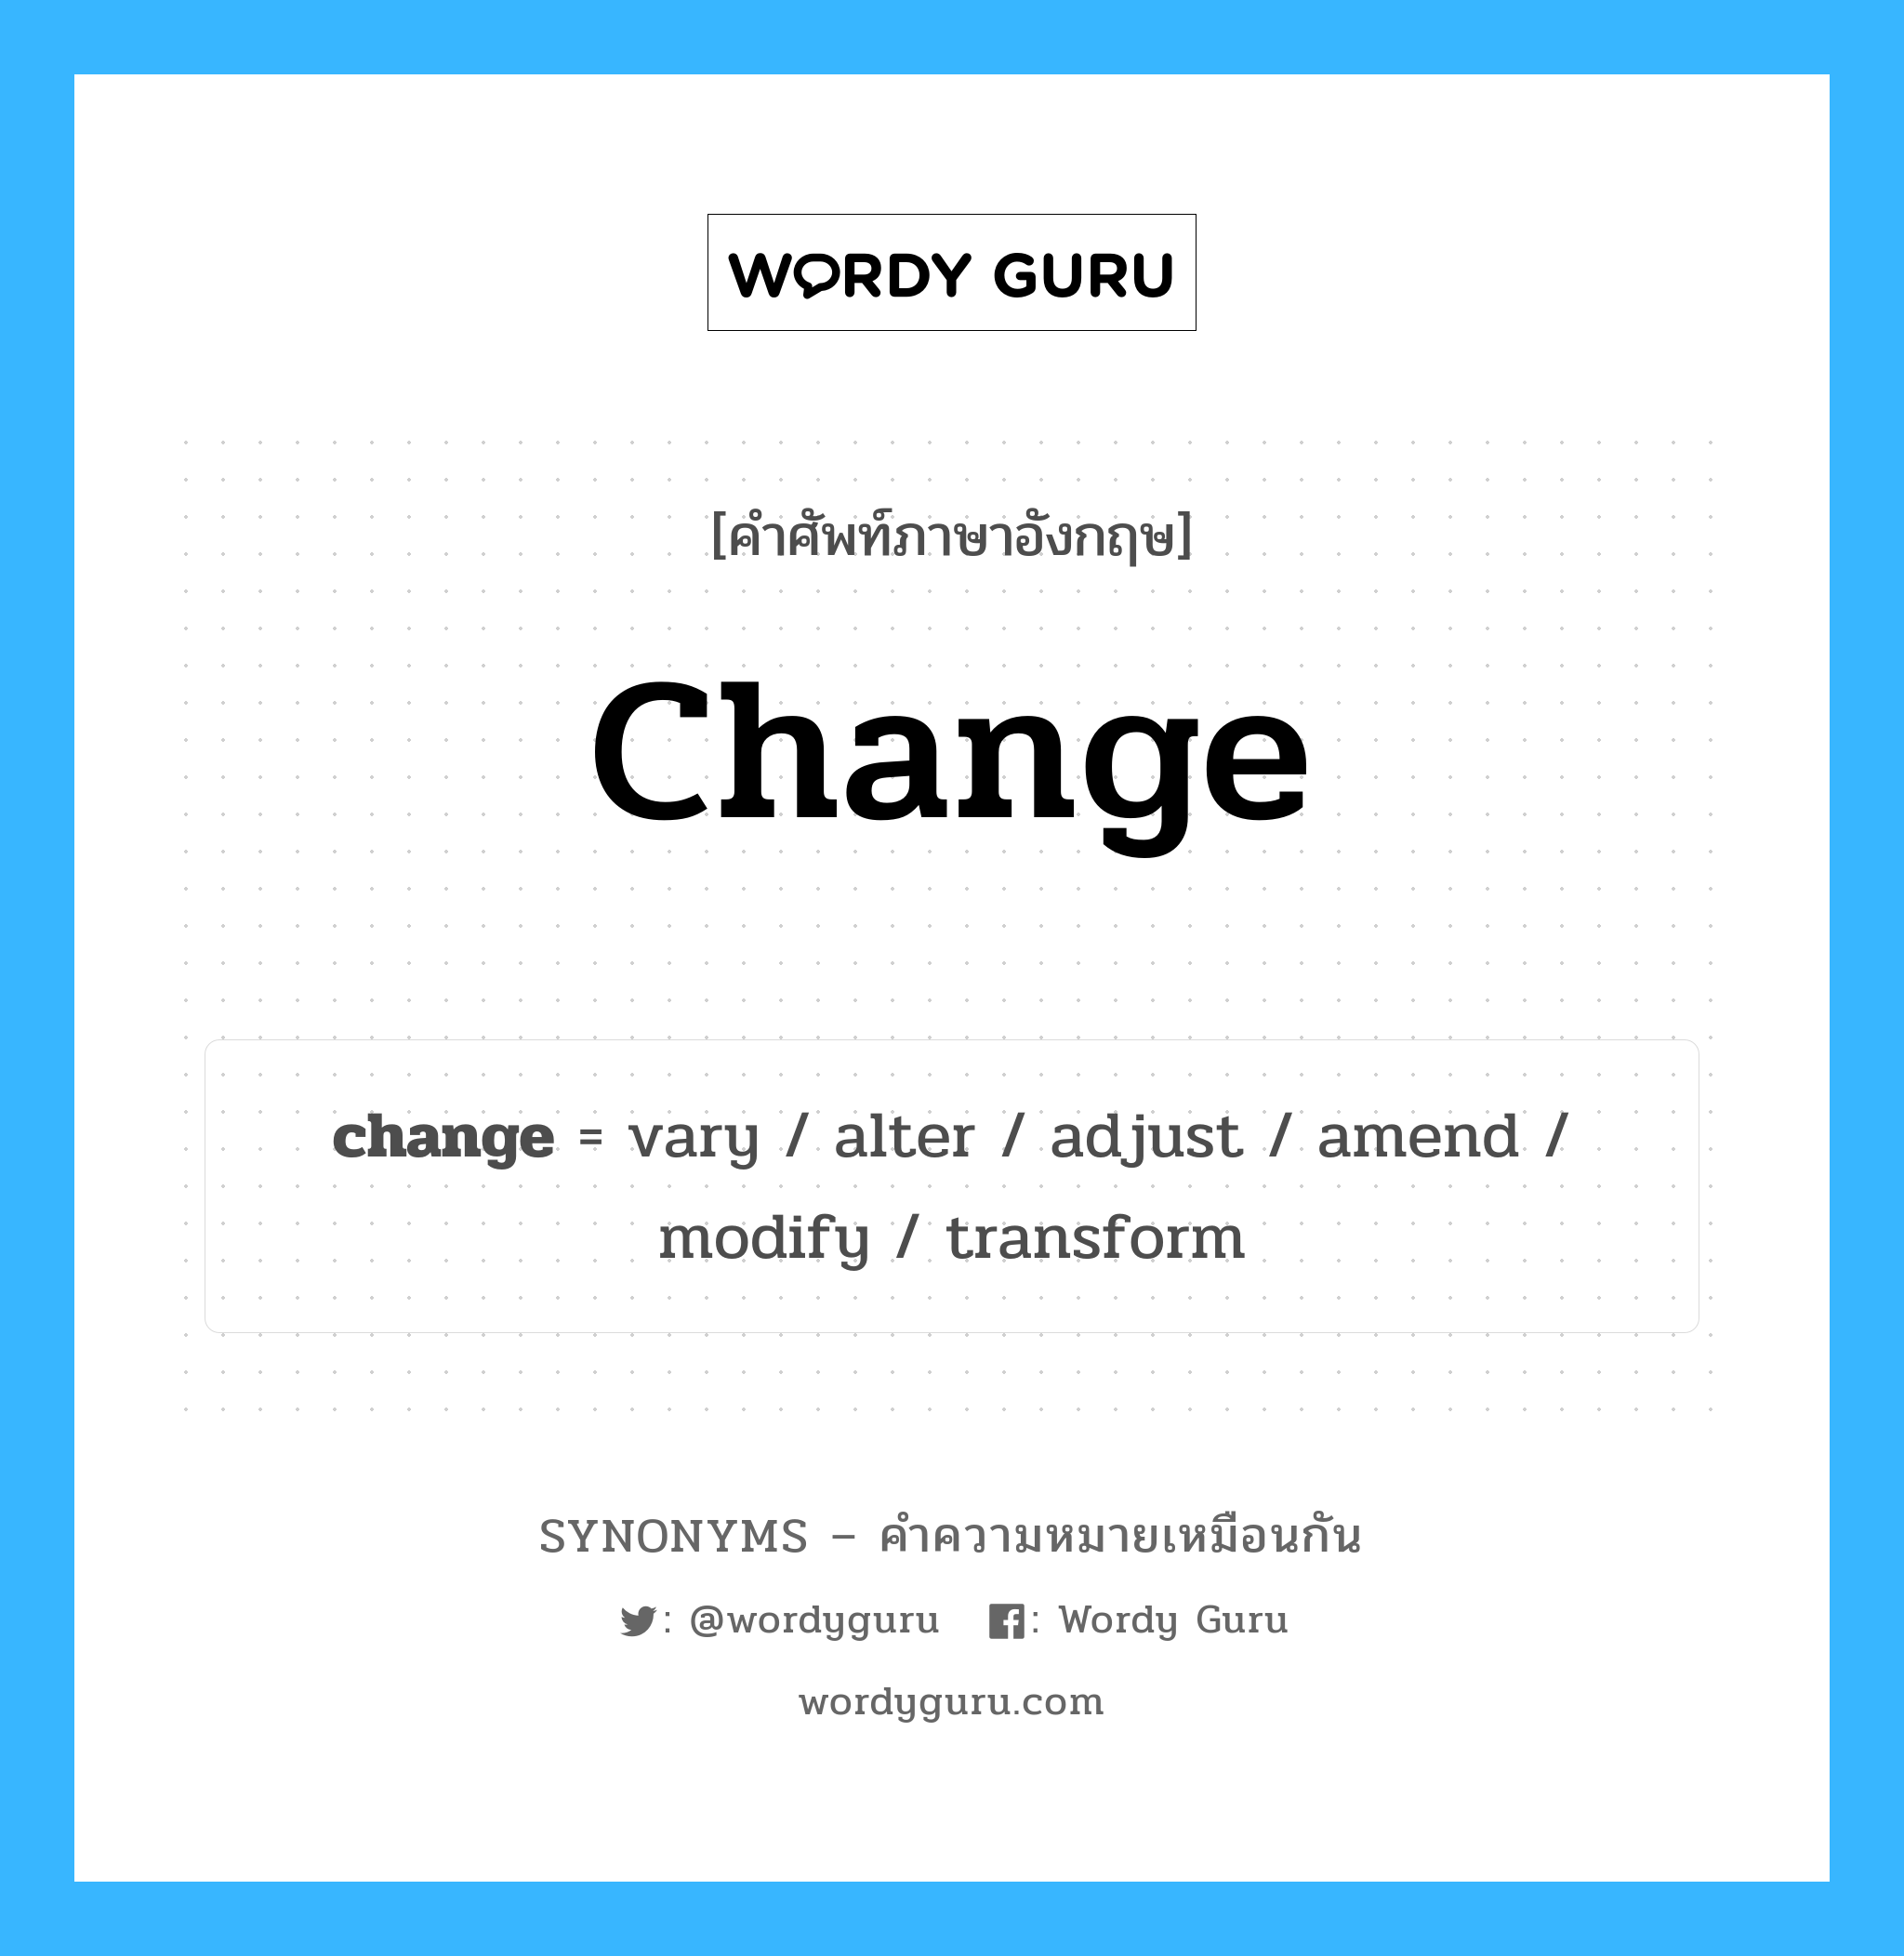 adjust เป็นหนึ่งใน revise และมีคำอื่น ๆ อีกดังนี้, คำศัพท์ภาษาอังกฤษ adjust ความหมายคล้ายกันกับ change แปลว่า ปรับ หมวด change